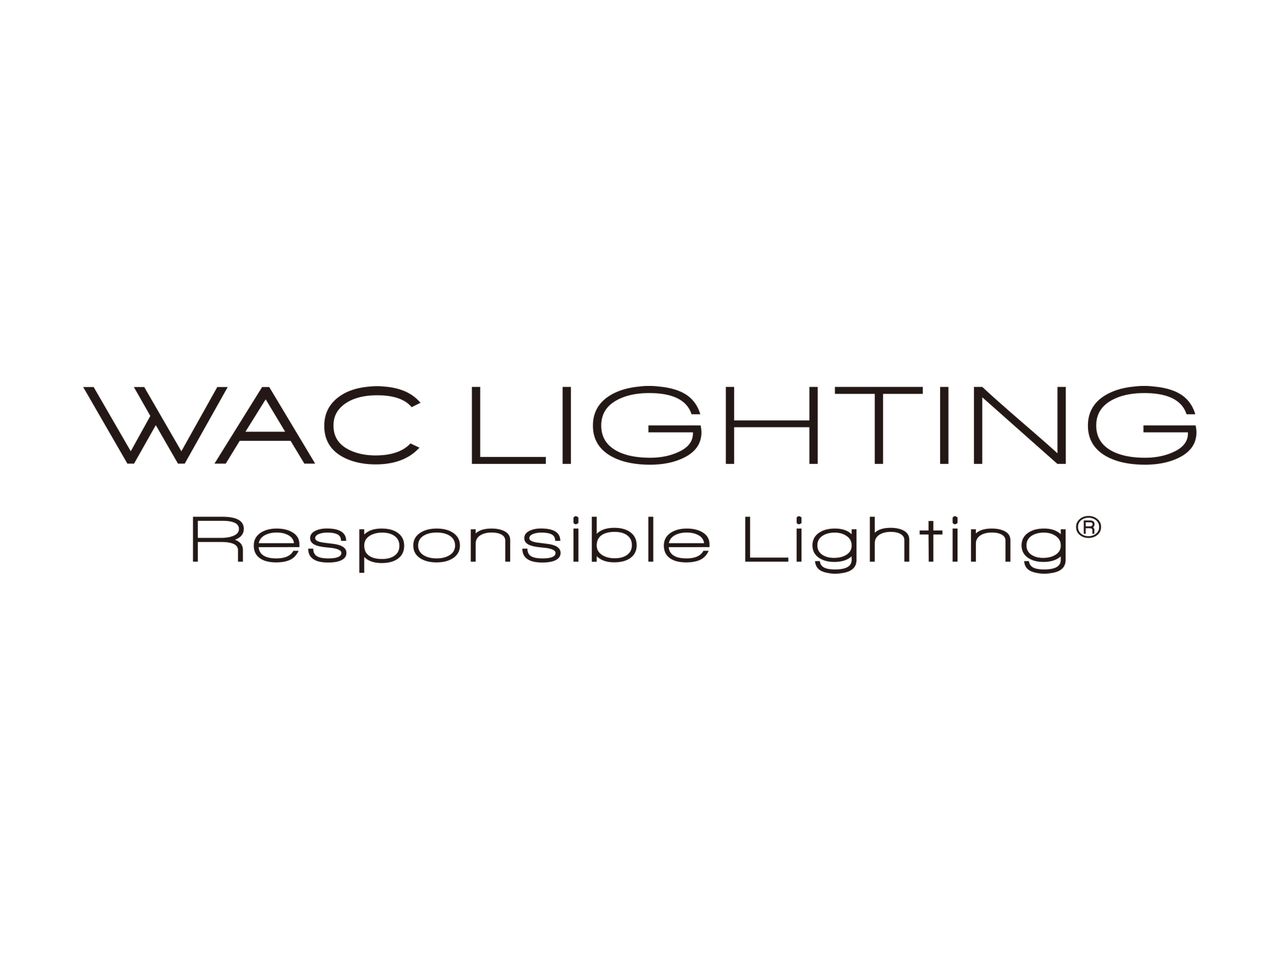 WAC Lighting